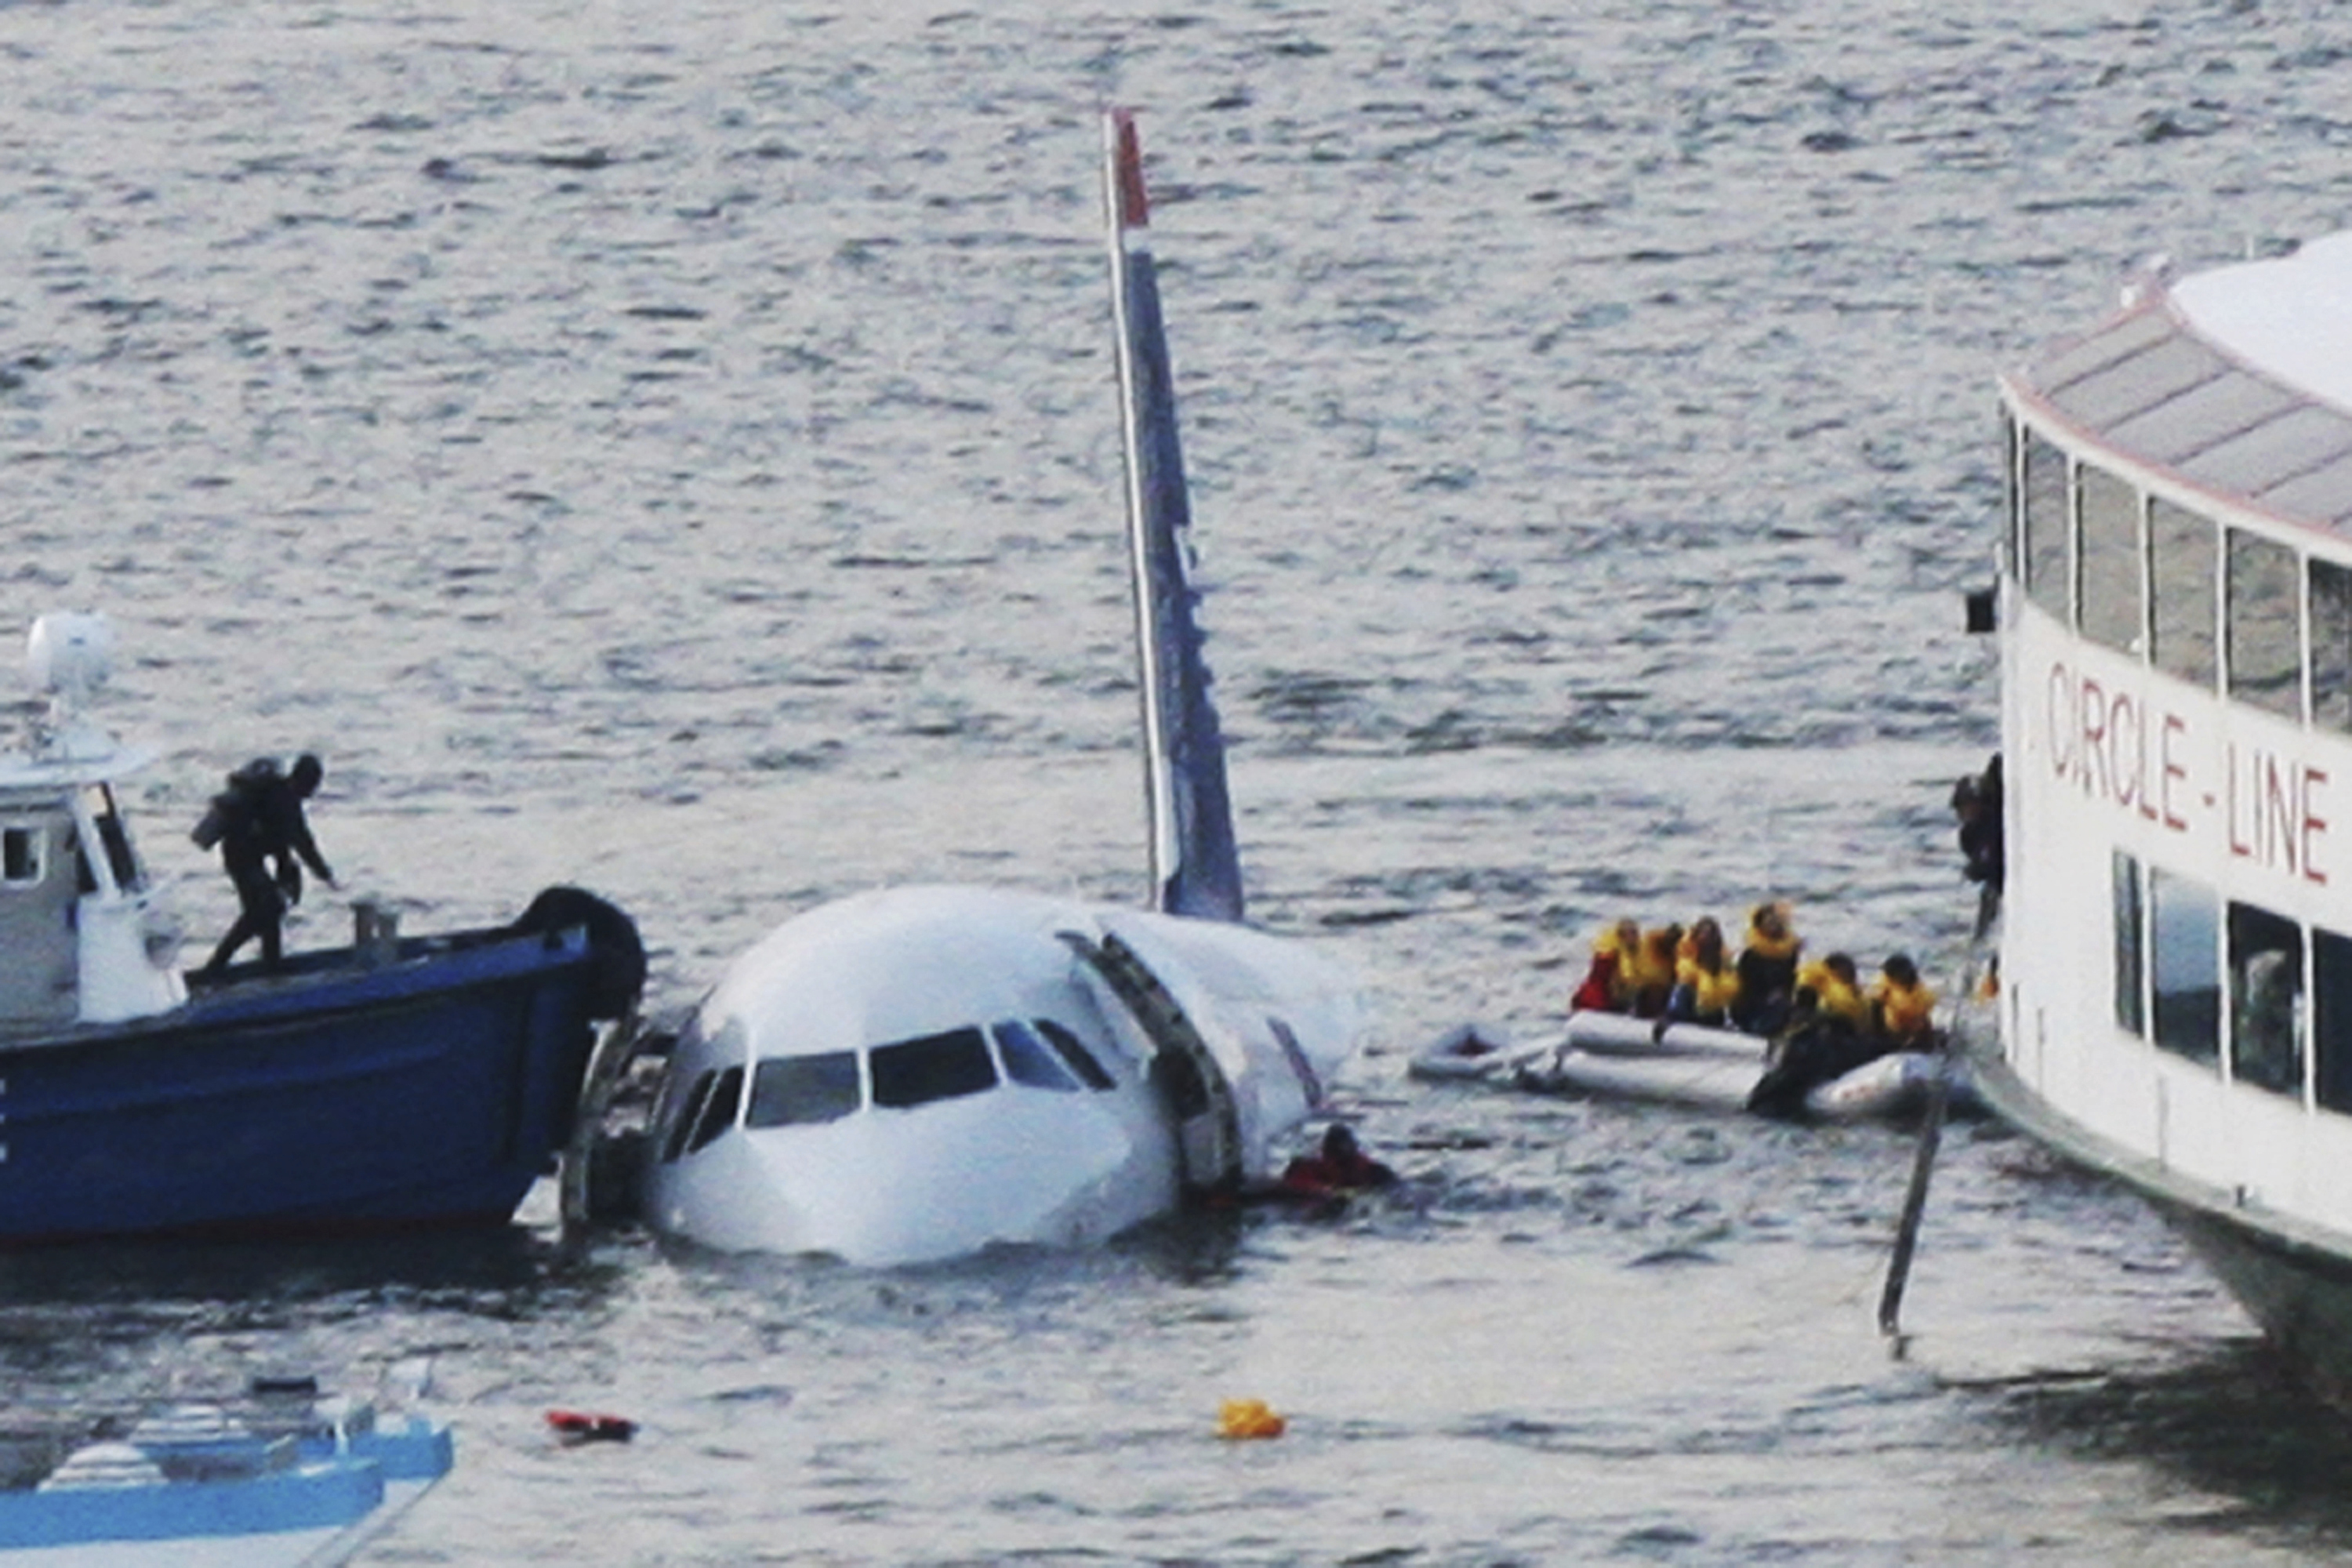 Hudson river plane crash. Авиакатастрофа на Гудзоне 2009. Самолёт на Гудзоне 2009. Аварийная посадка a320 на Гудзон. Рейс 1549 us Airways.